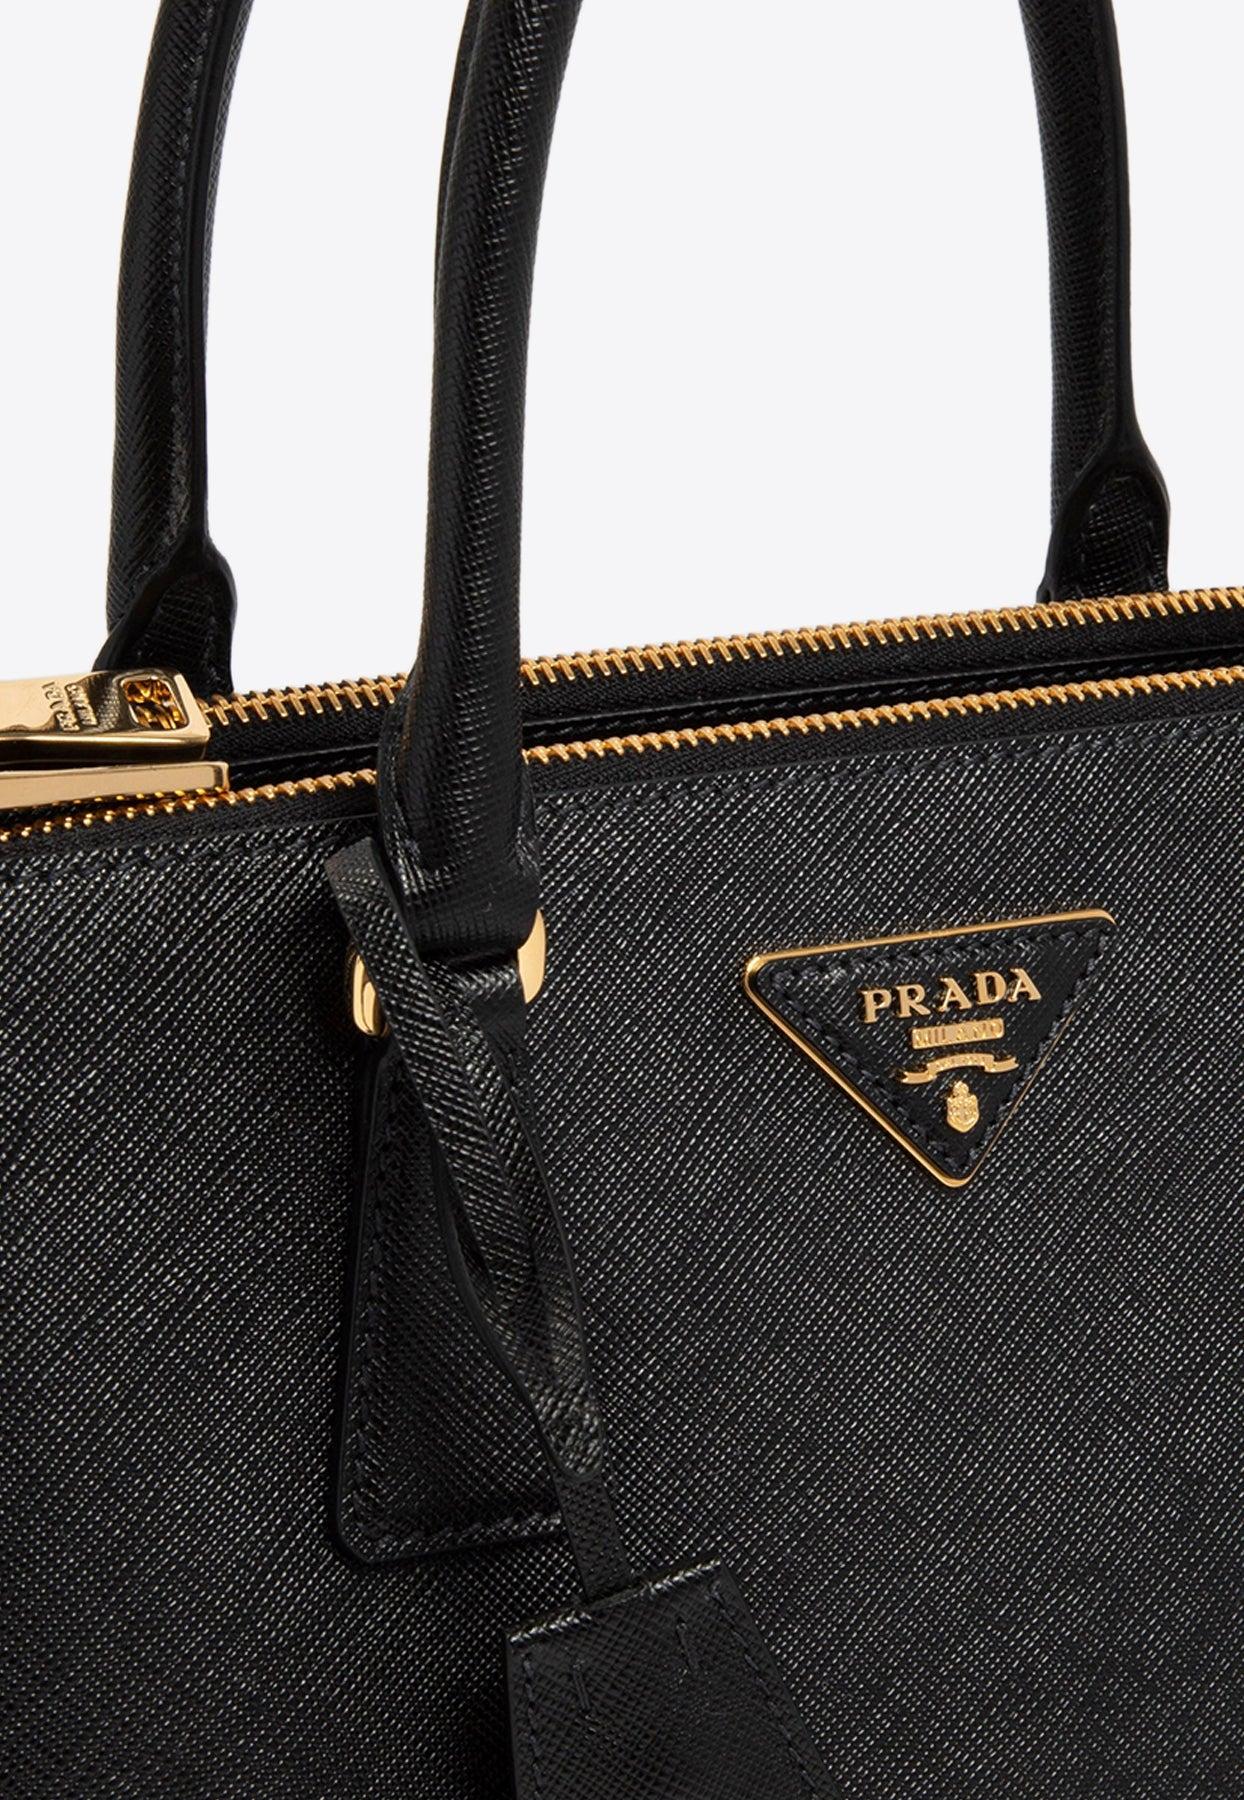 Prada Galleria Saffiano Lux Leather Medium Tote Bag